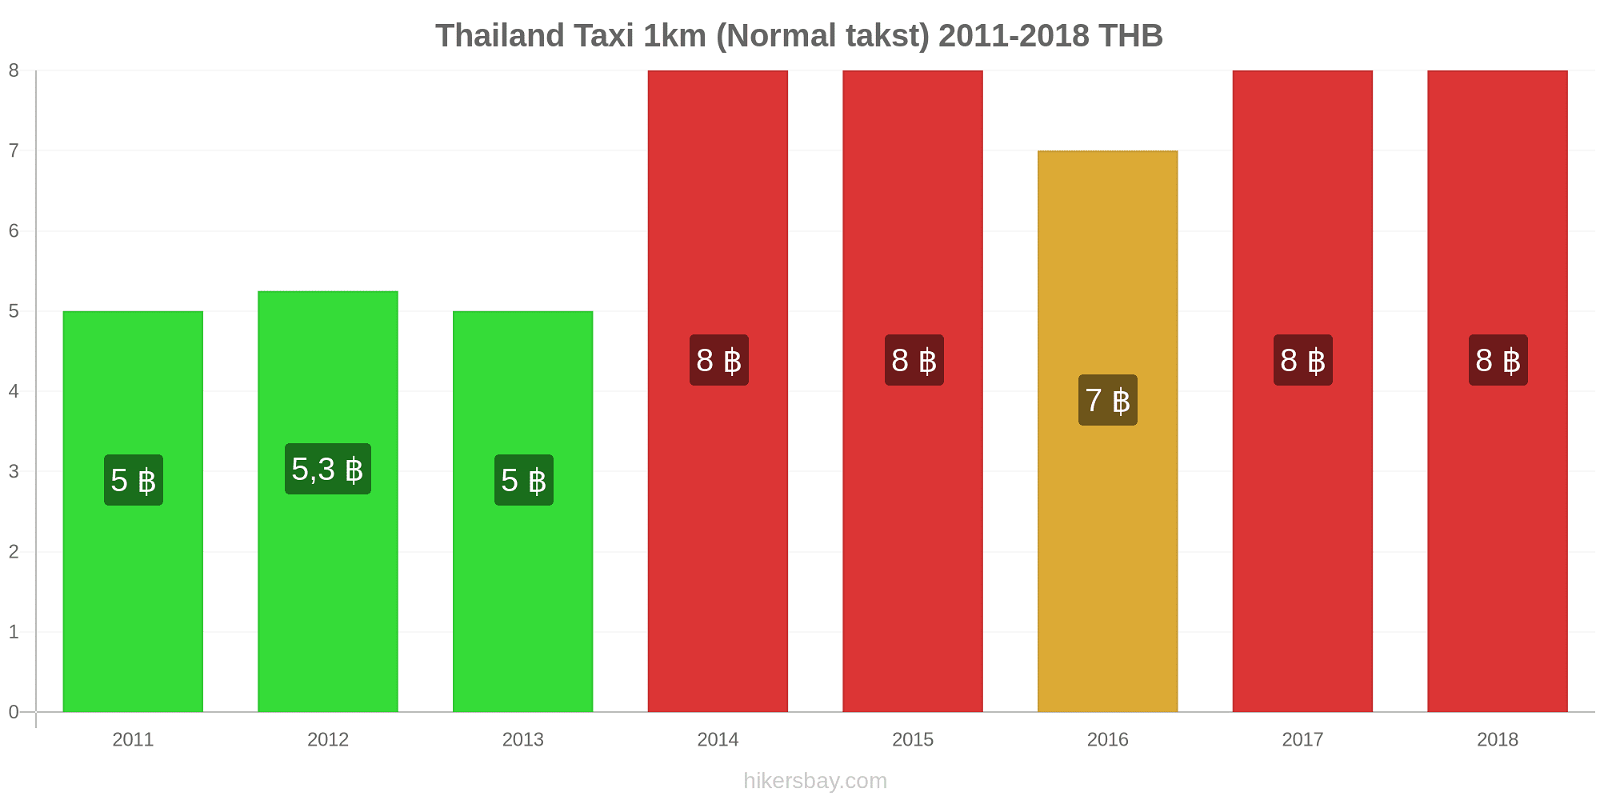 Thailand prisændringer Taxi 1km (normal takst) hikersbay.com